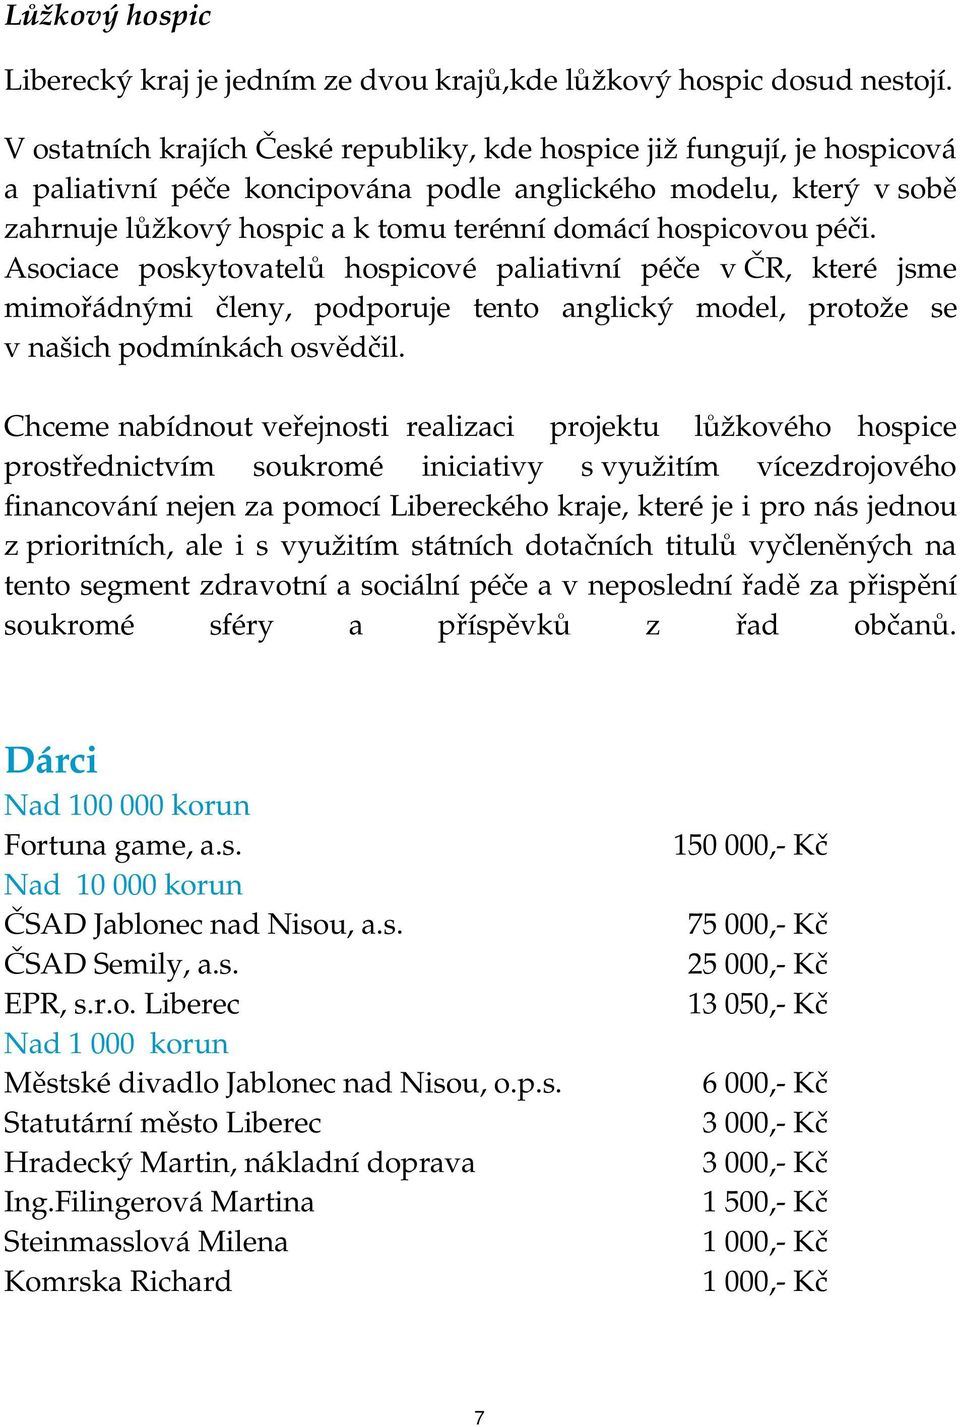 hospicovou péči. Asociace poskytovatelů hospicové paliativní péče v ČR, které jsme mimořádnými členy, podporuje tento anglický model, protože se v našich podmínkách osvědčil.